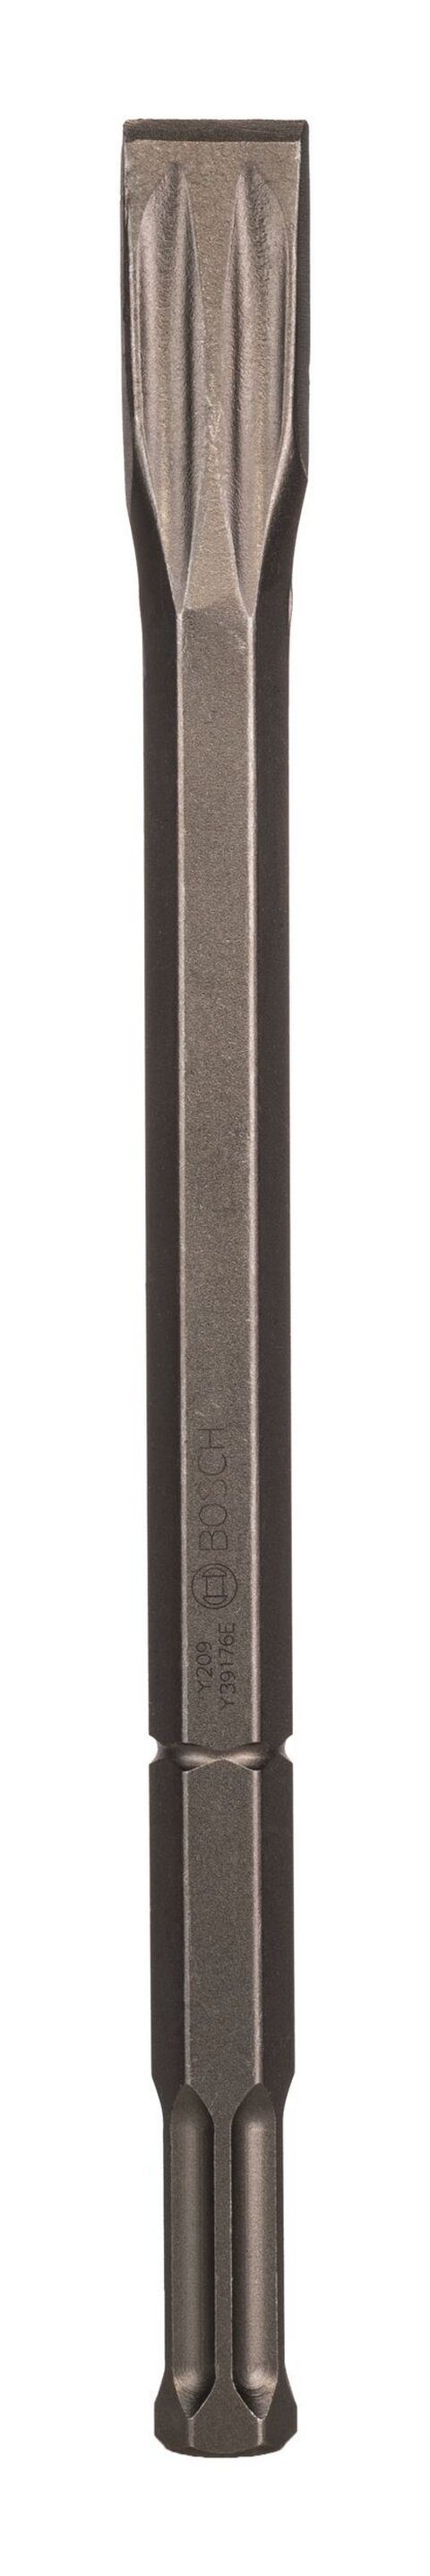 BOSCH Steinbohrer, Flachmeißel mit 22-mm-Sechskantaufnahme - 400 x 30 mm